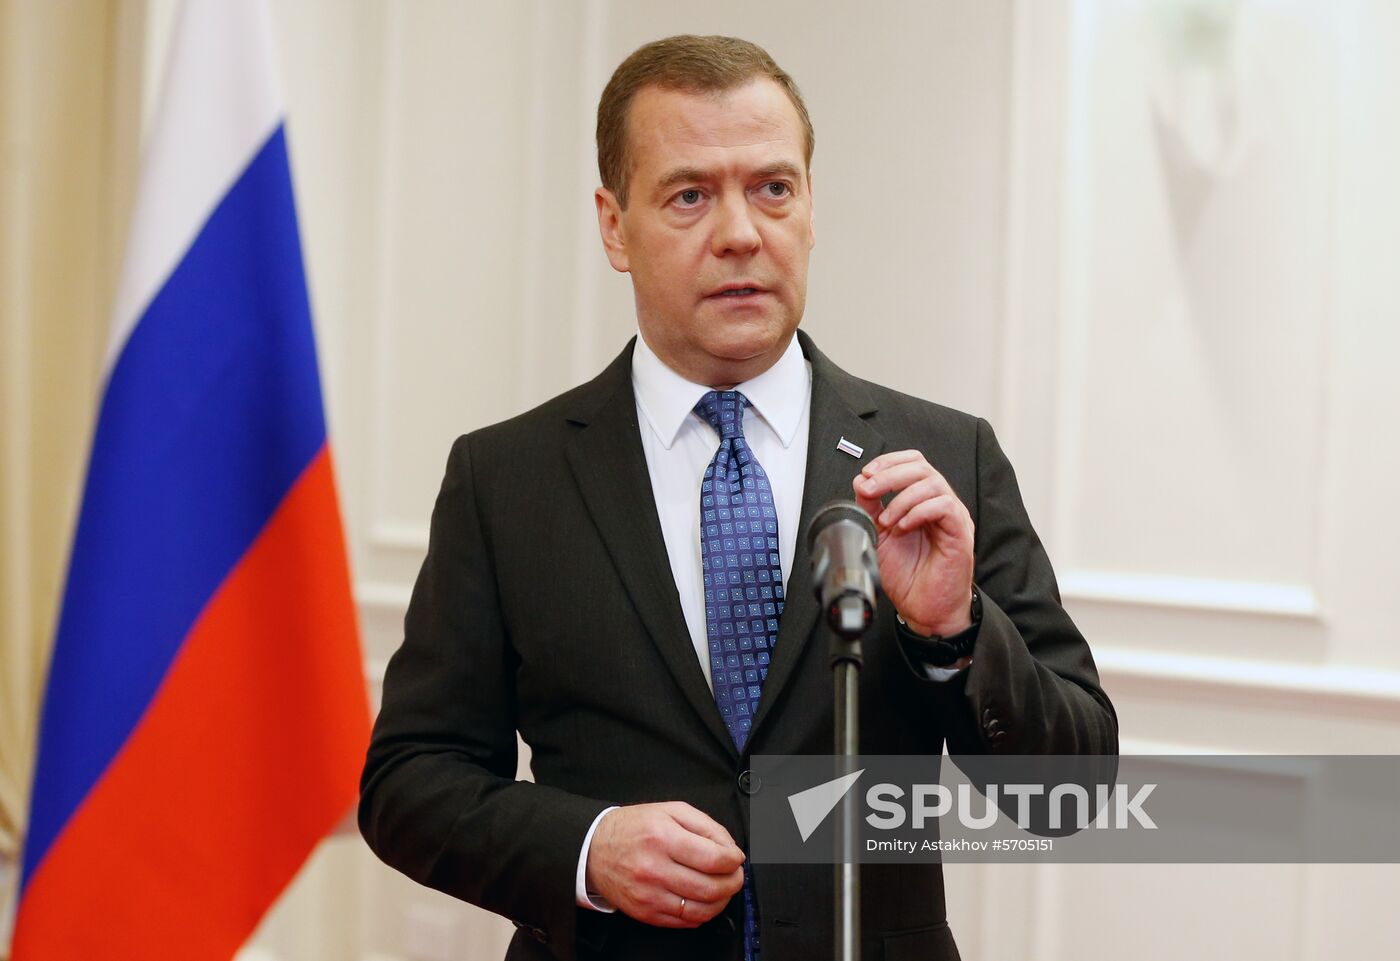 Prime Minister Medvedev's visit to Vietnam